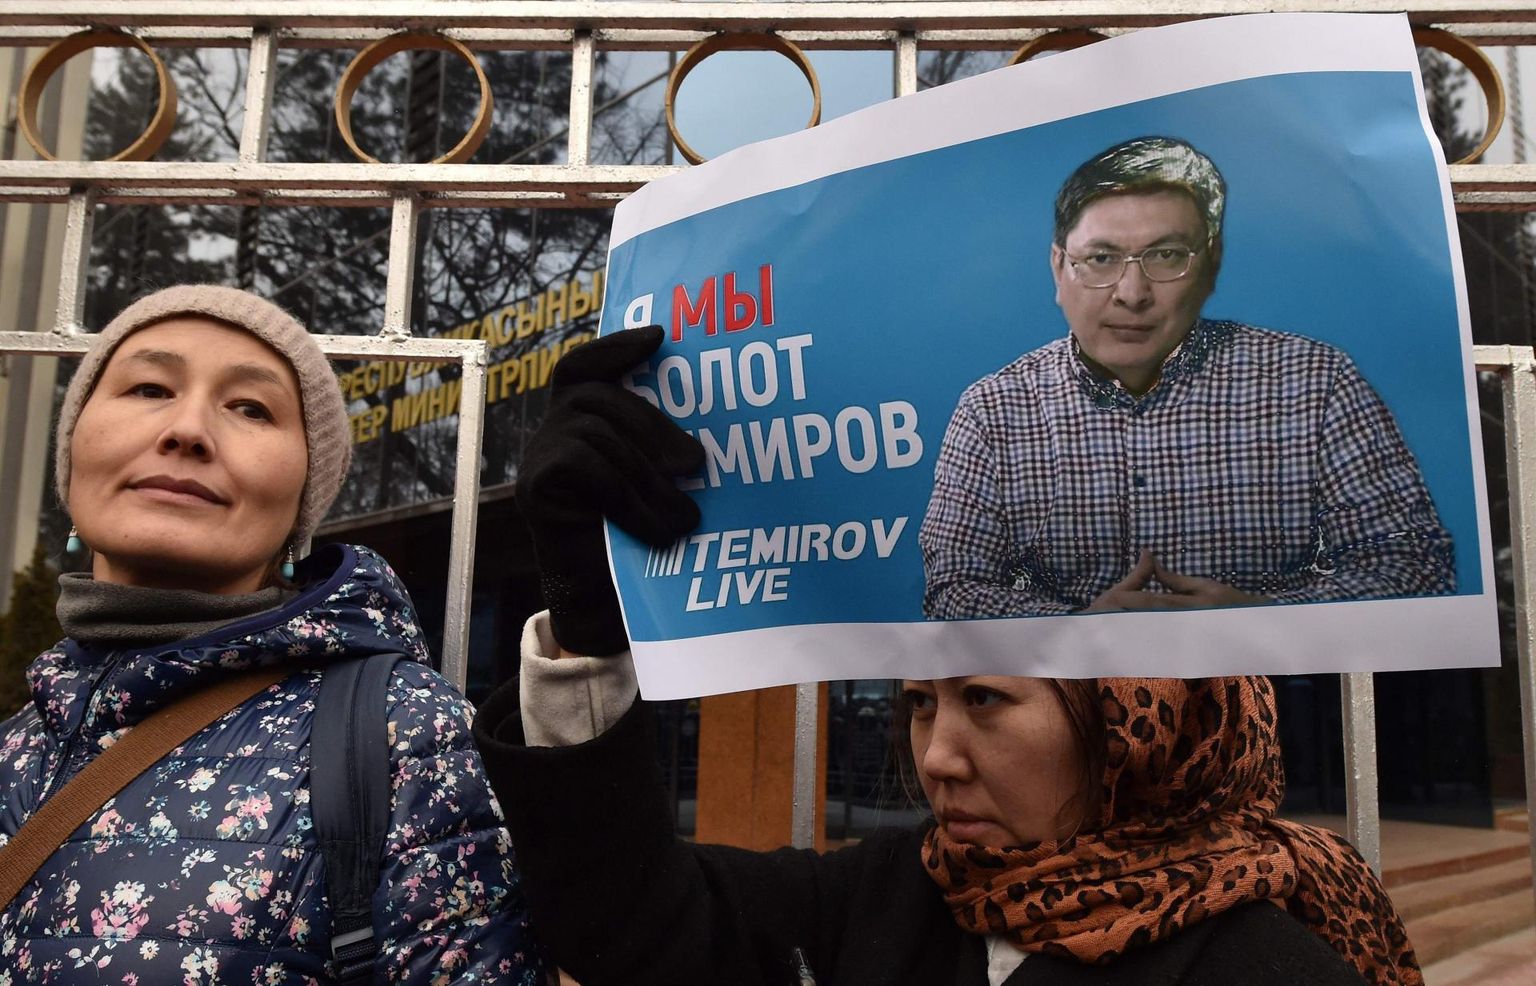 Aktivistid avaldamas meelt Bolot Temirovi vahistamise vastu, mis inimõiguslaste sõnul on suur löök riigi ajakirjandusvabadusele. 